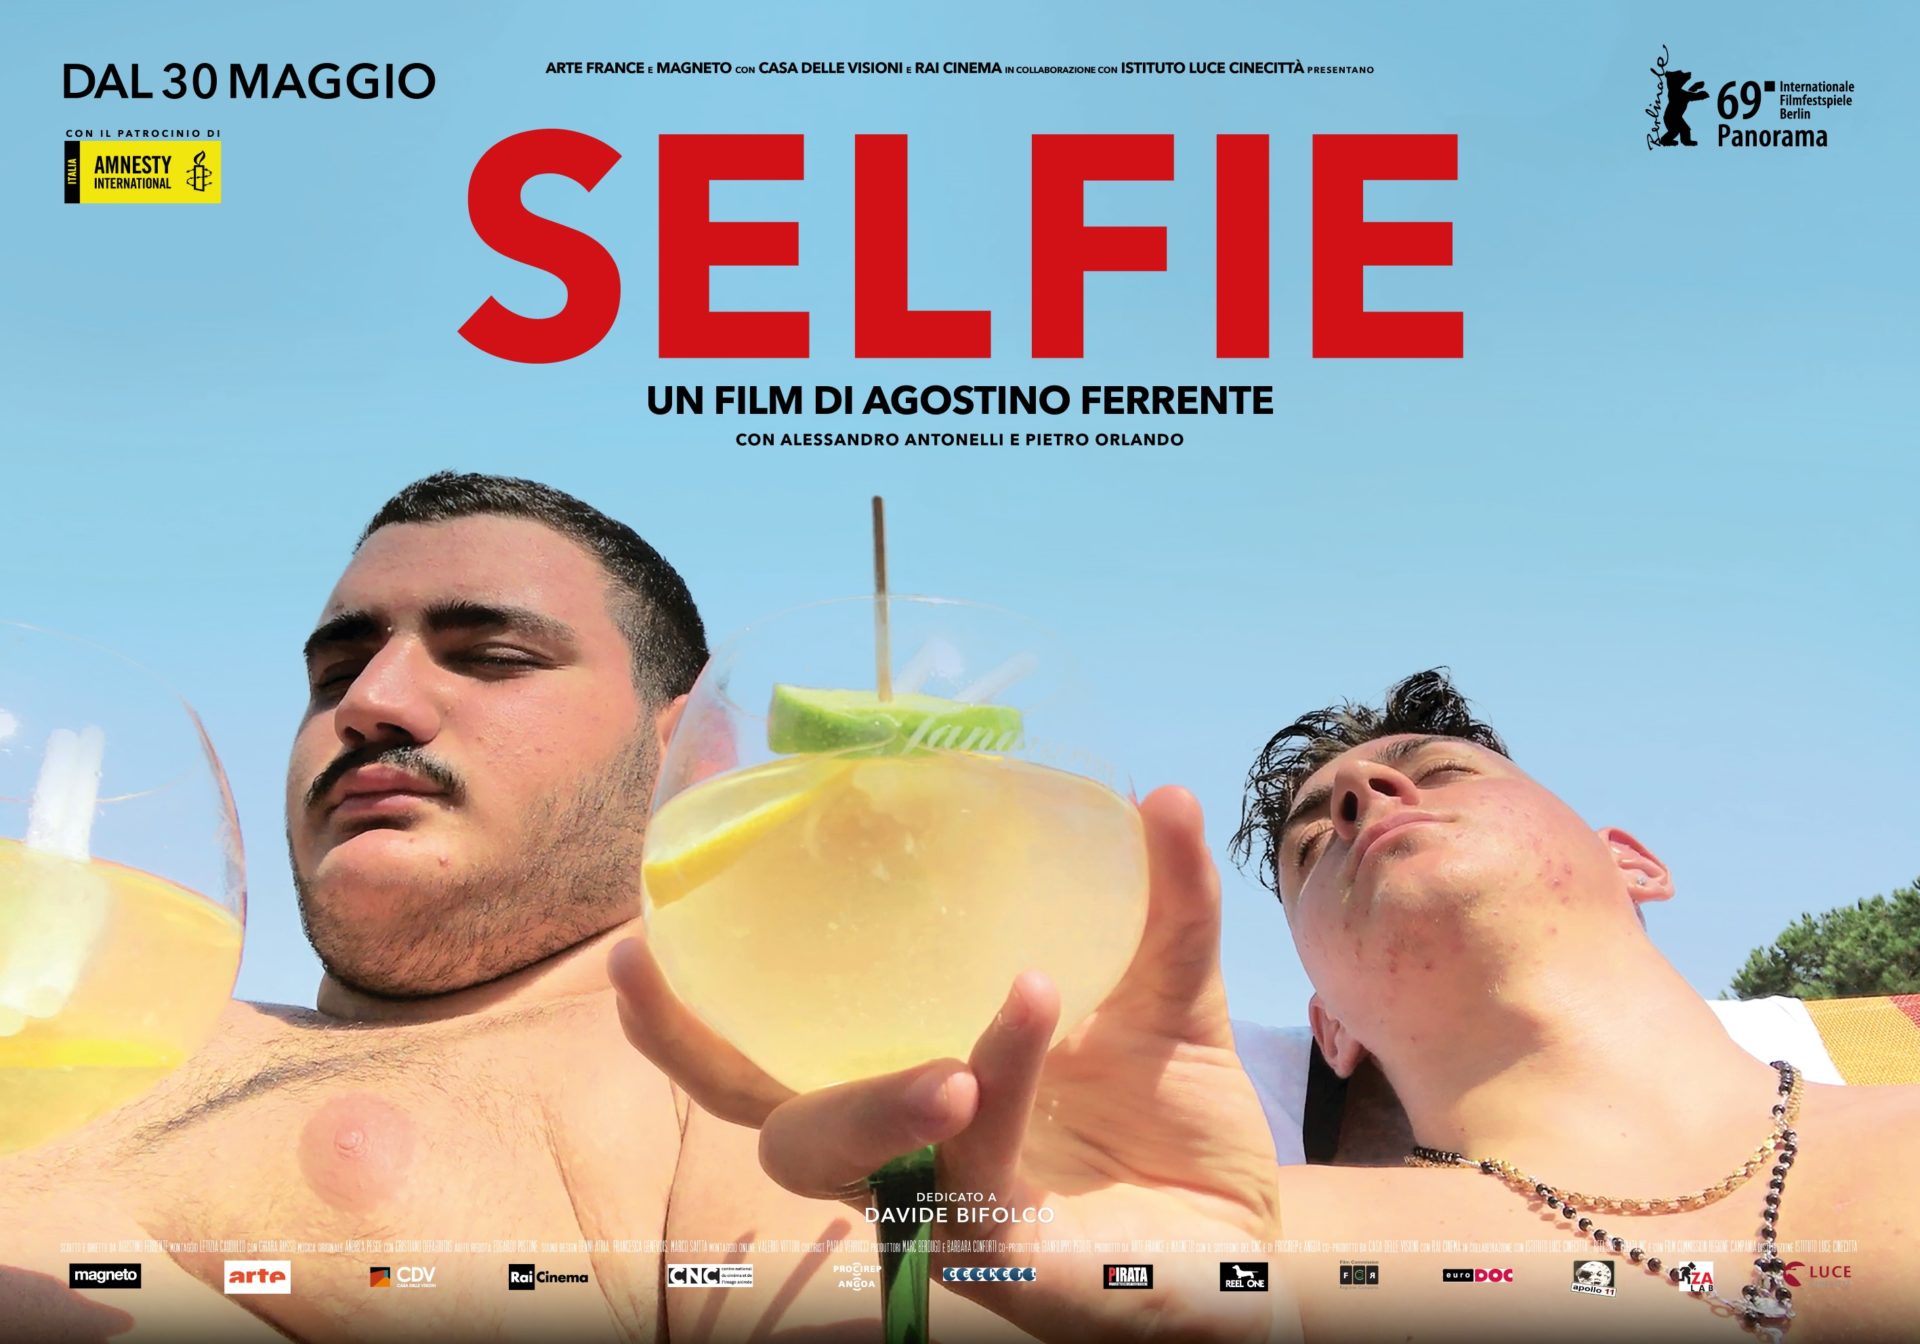 Il film 'Selfie', girato “dal vero” al Rione Traiano, candidato come Miglior Documentario agli Efa-European Film Awards